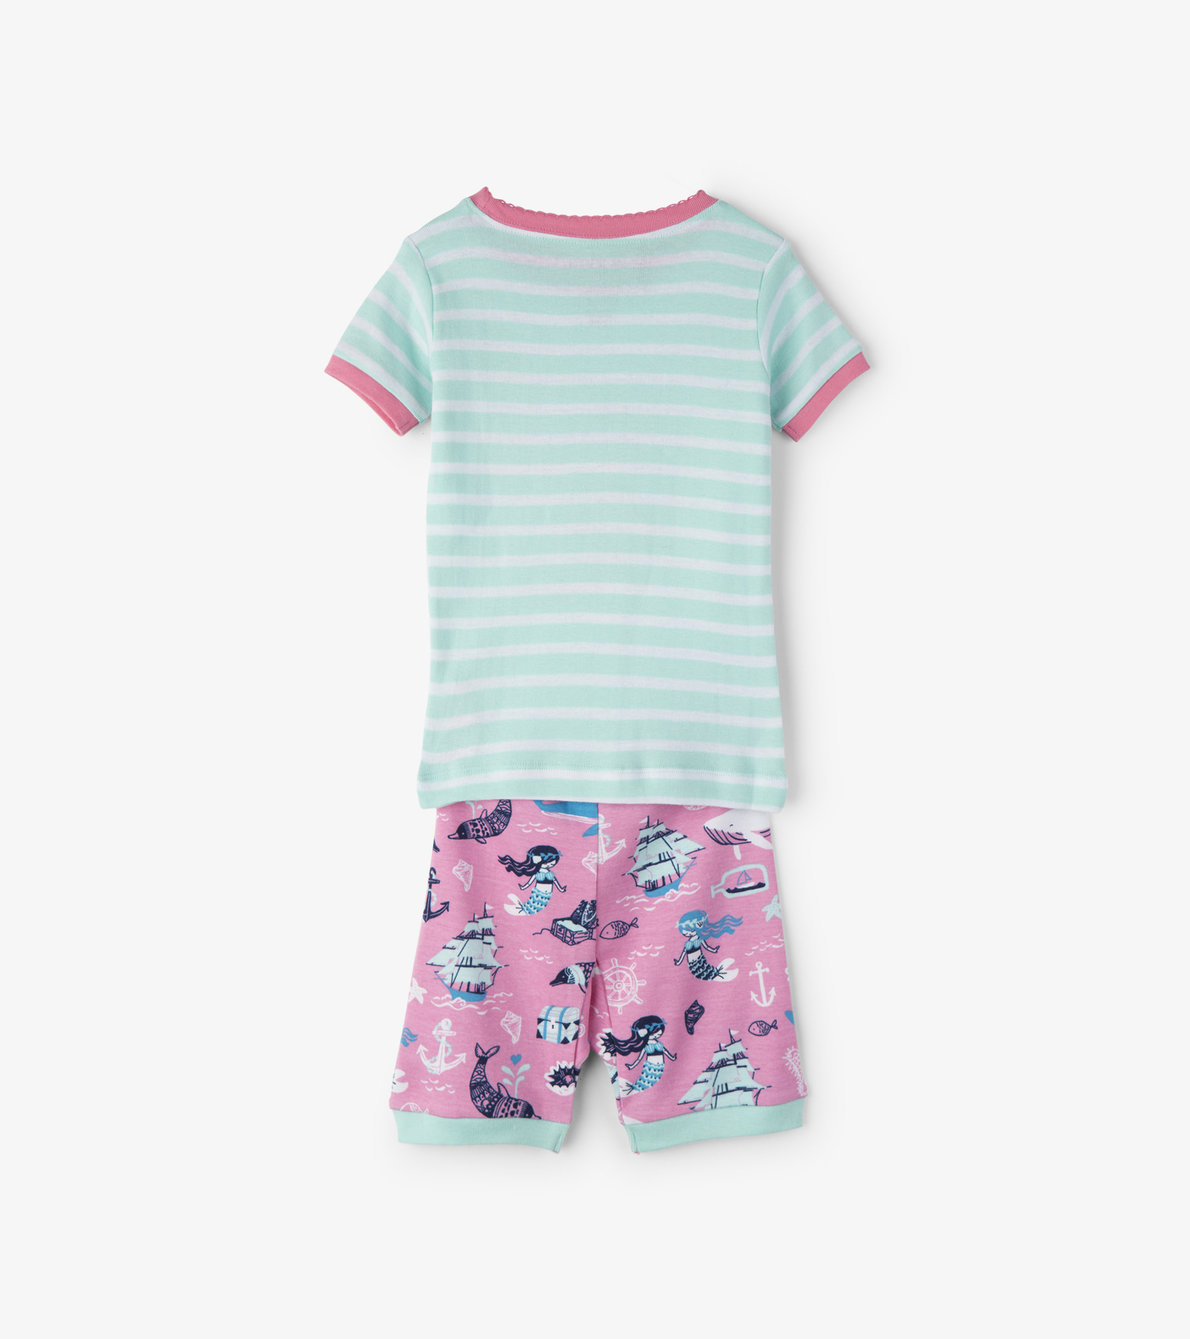 View larger image of Sweet Mermaid Kids Short Pajama Set